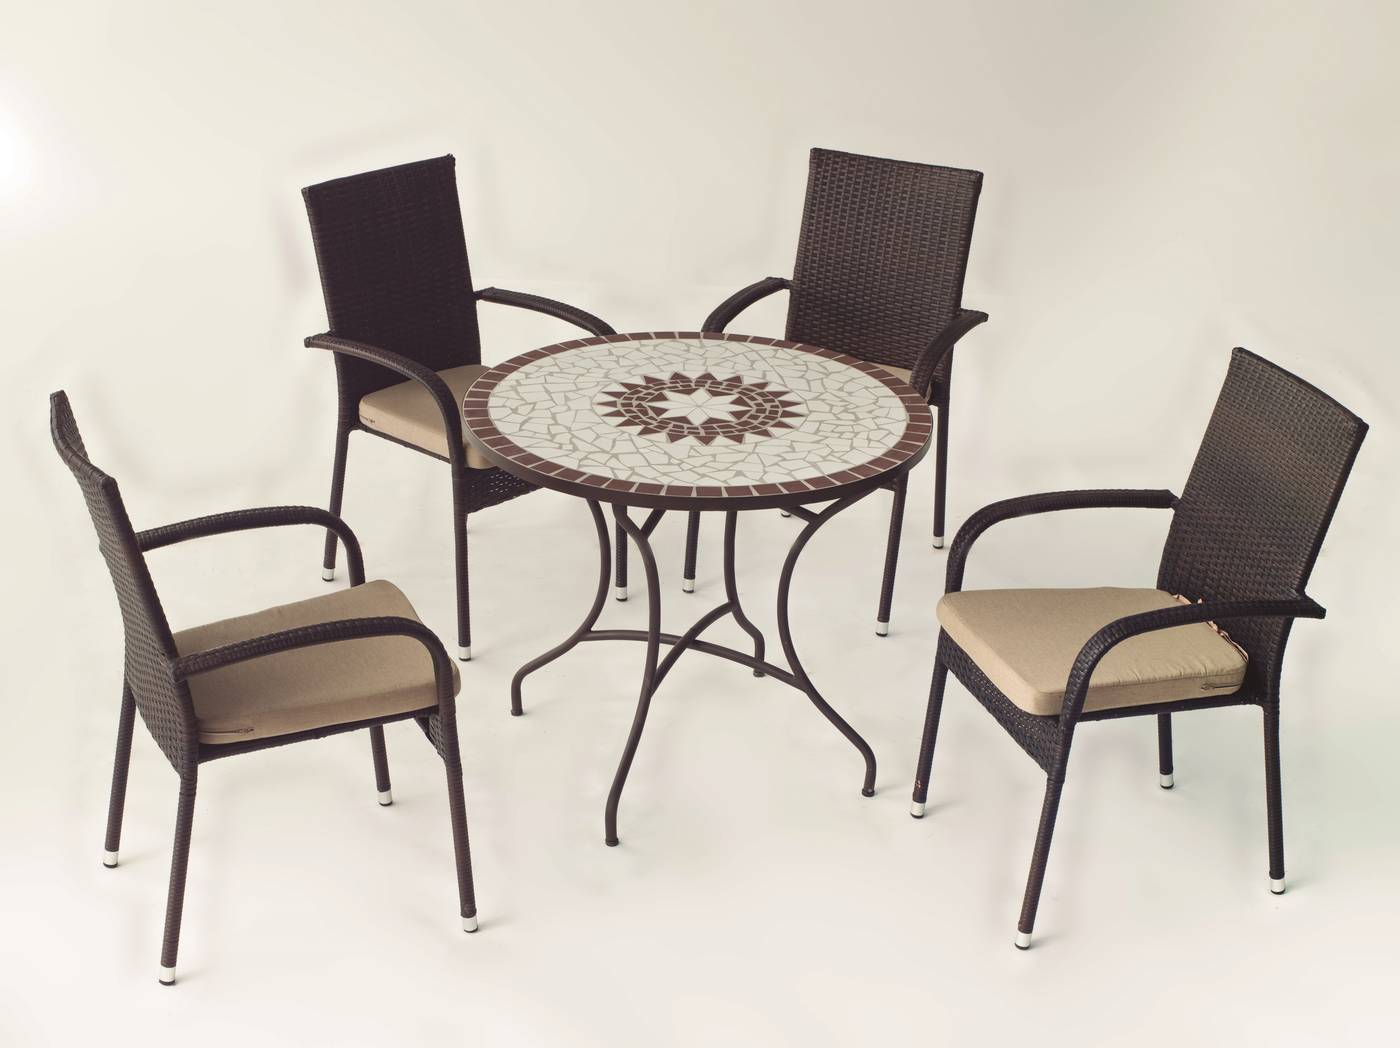 Conjunto Mosaico Estela90-Bergamo - Conjunto de forja color marrón: mesa con tablero mosaico de 90 cm + 4 sillones de ratán sintético con cojines.